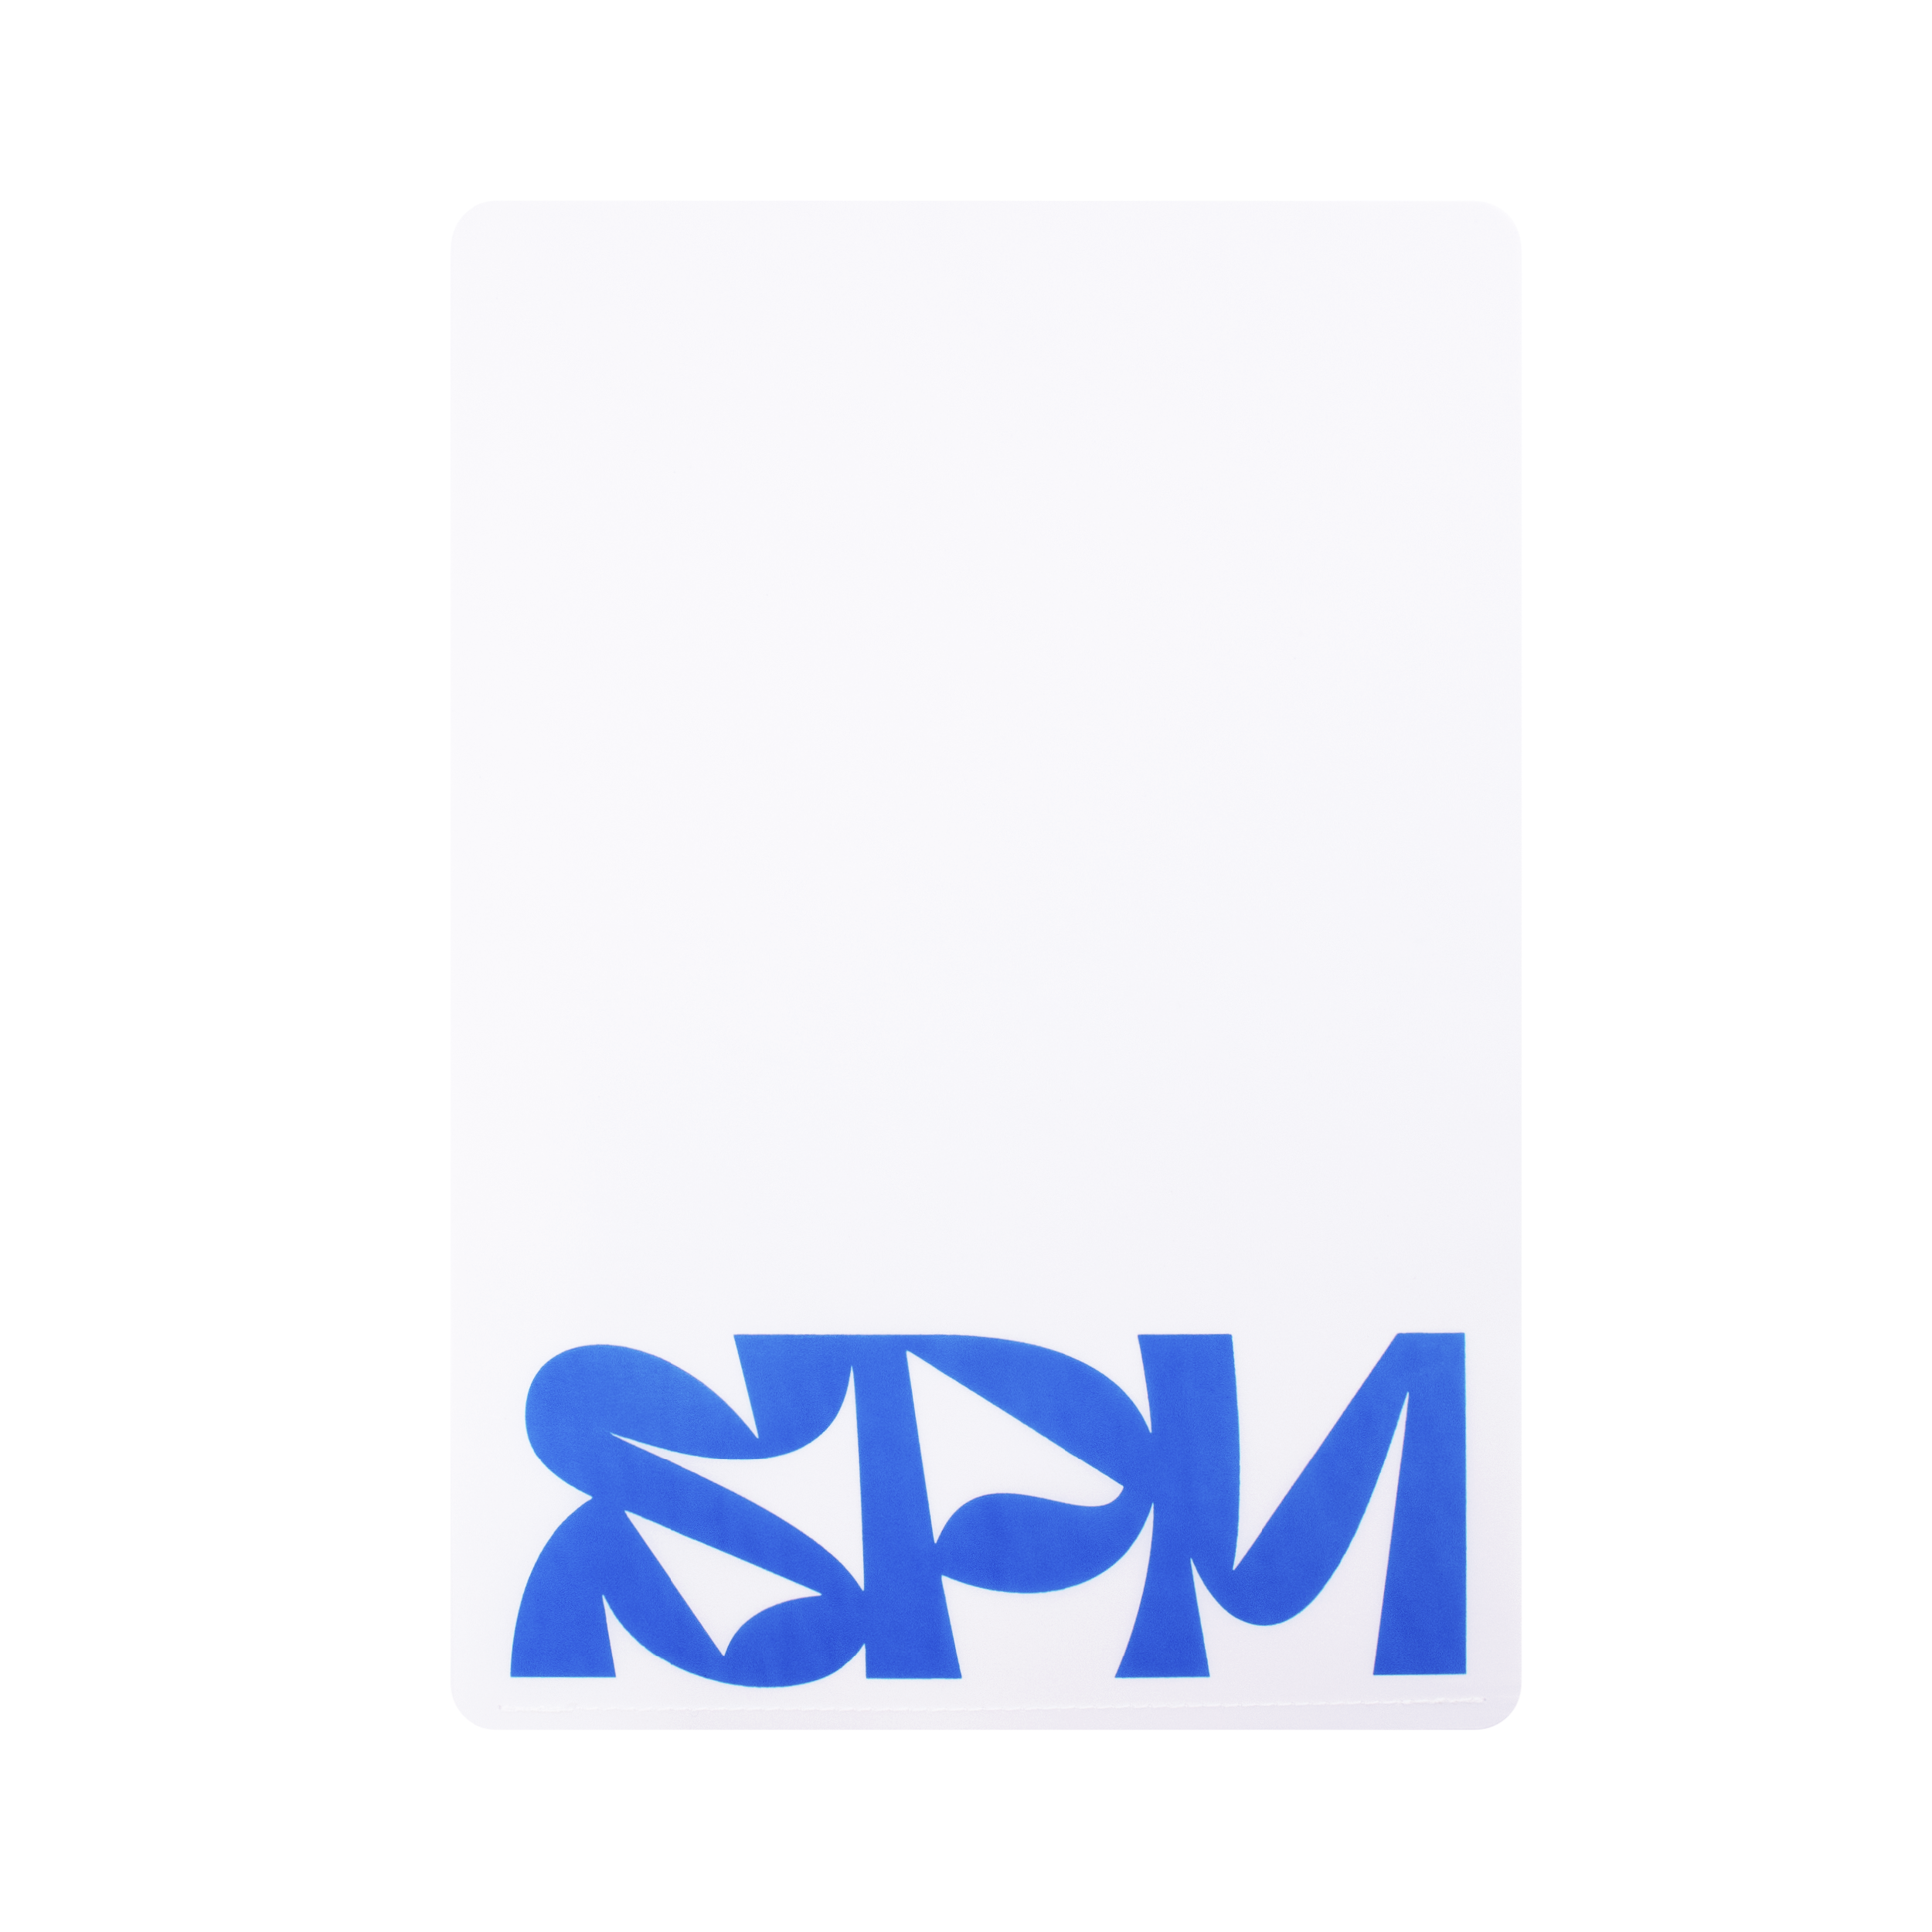 Wax Paper File（SPM ver.）